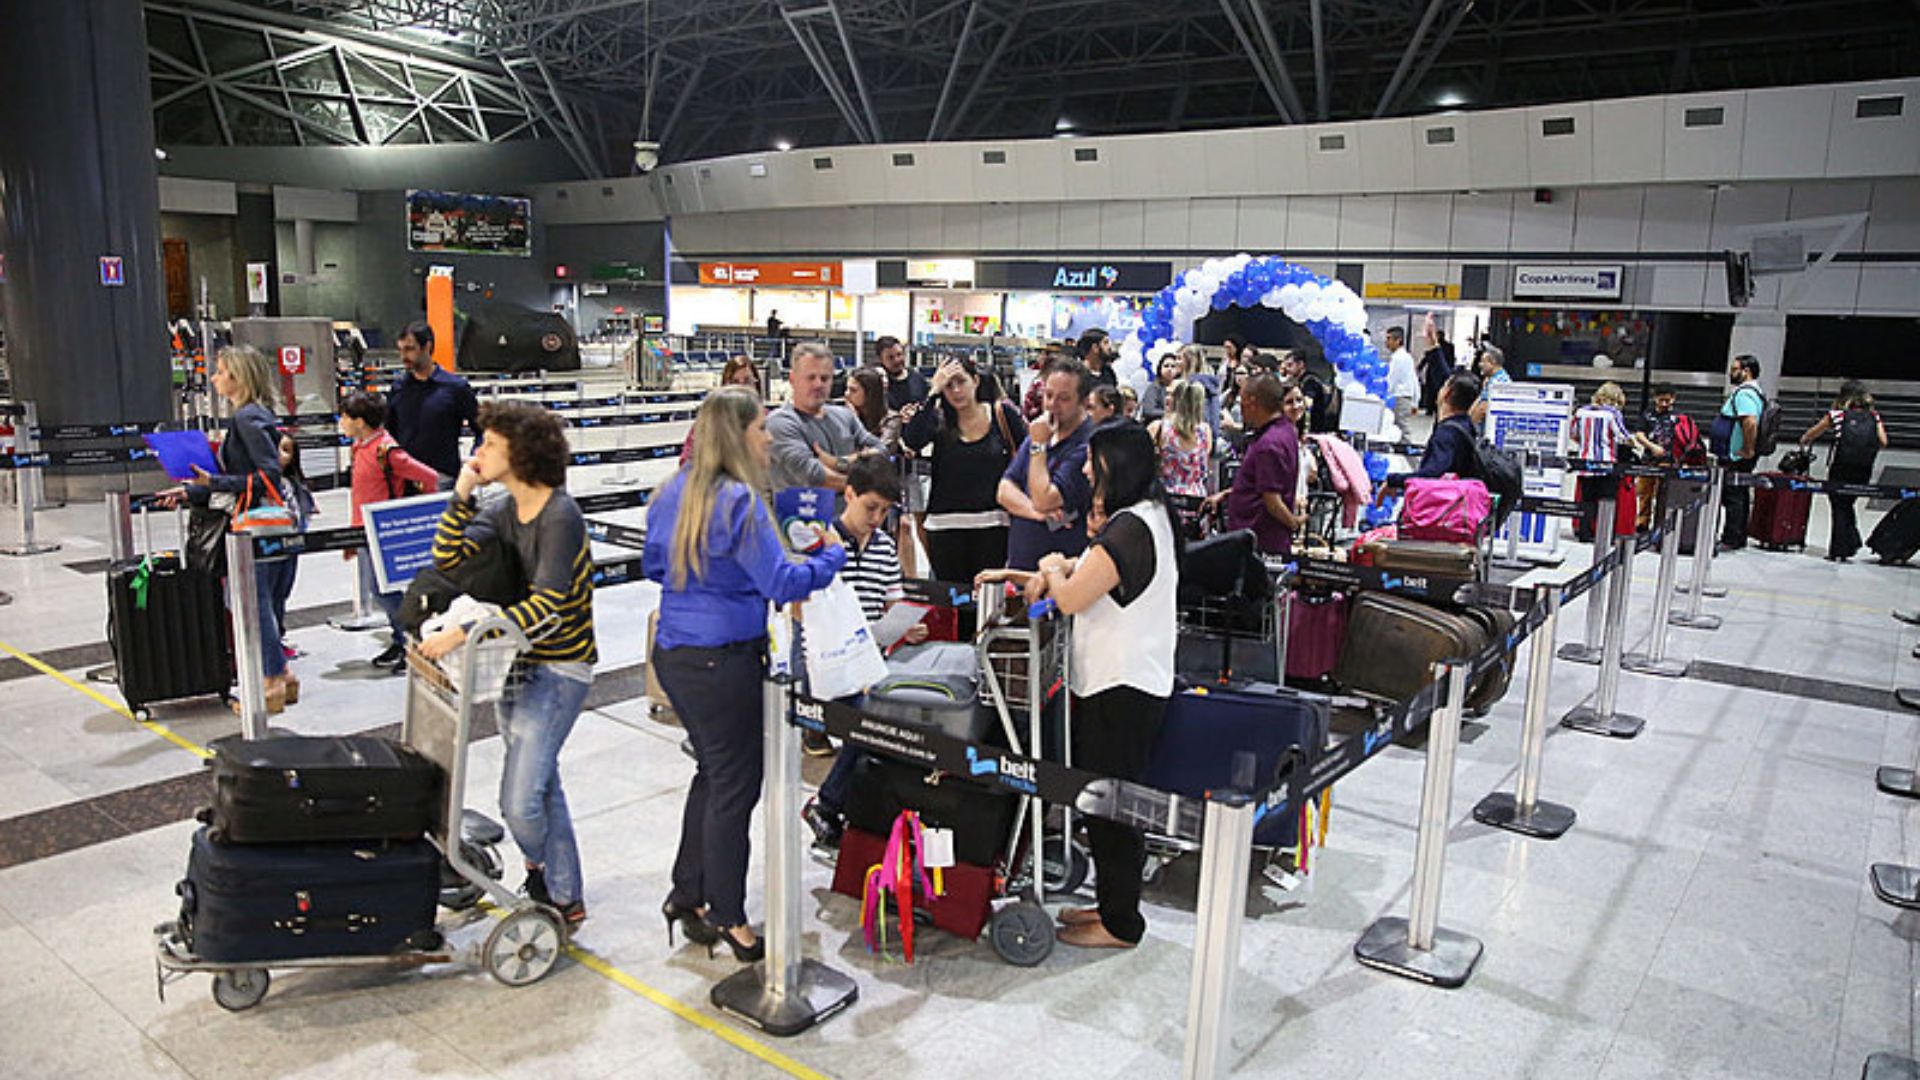 Aeroporto do internacional do Recife. Foto: Divulgação